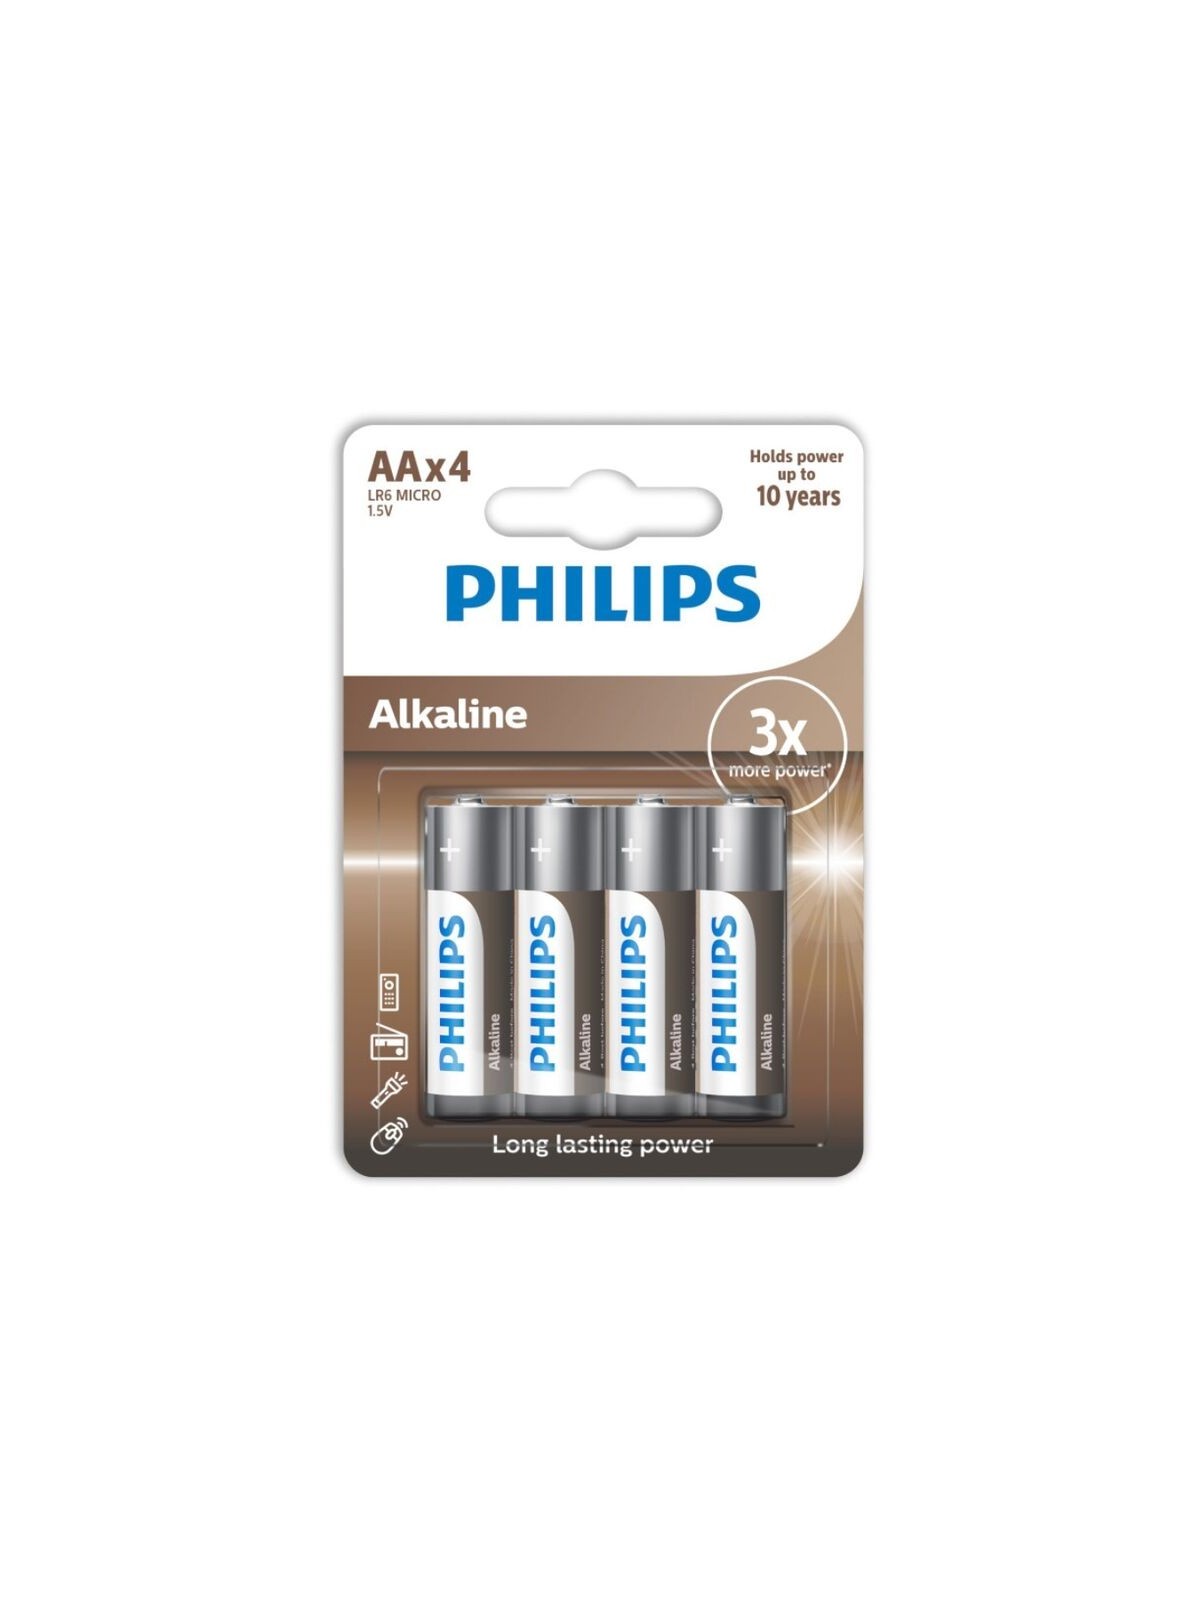 Philips Alkaline Pila AA LR6 Blister 4 - Comprar Pilas y baterías Phillips - Pilas & baterías (1)